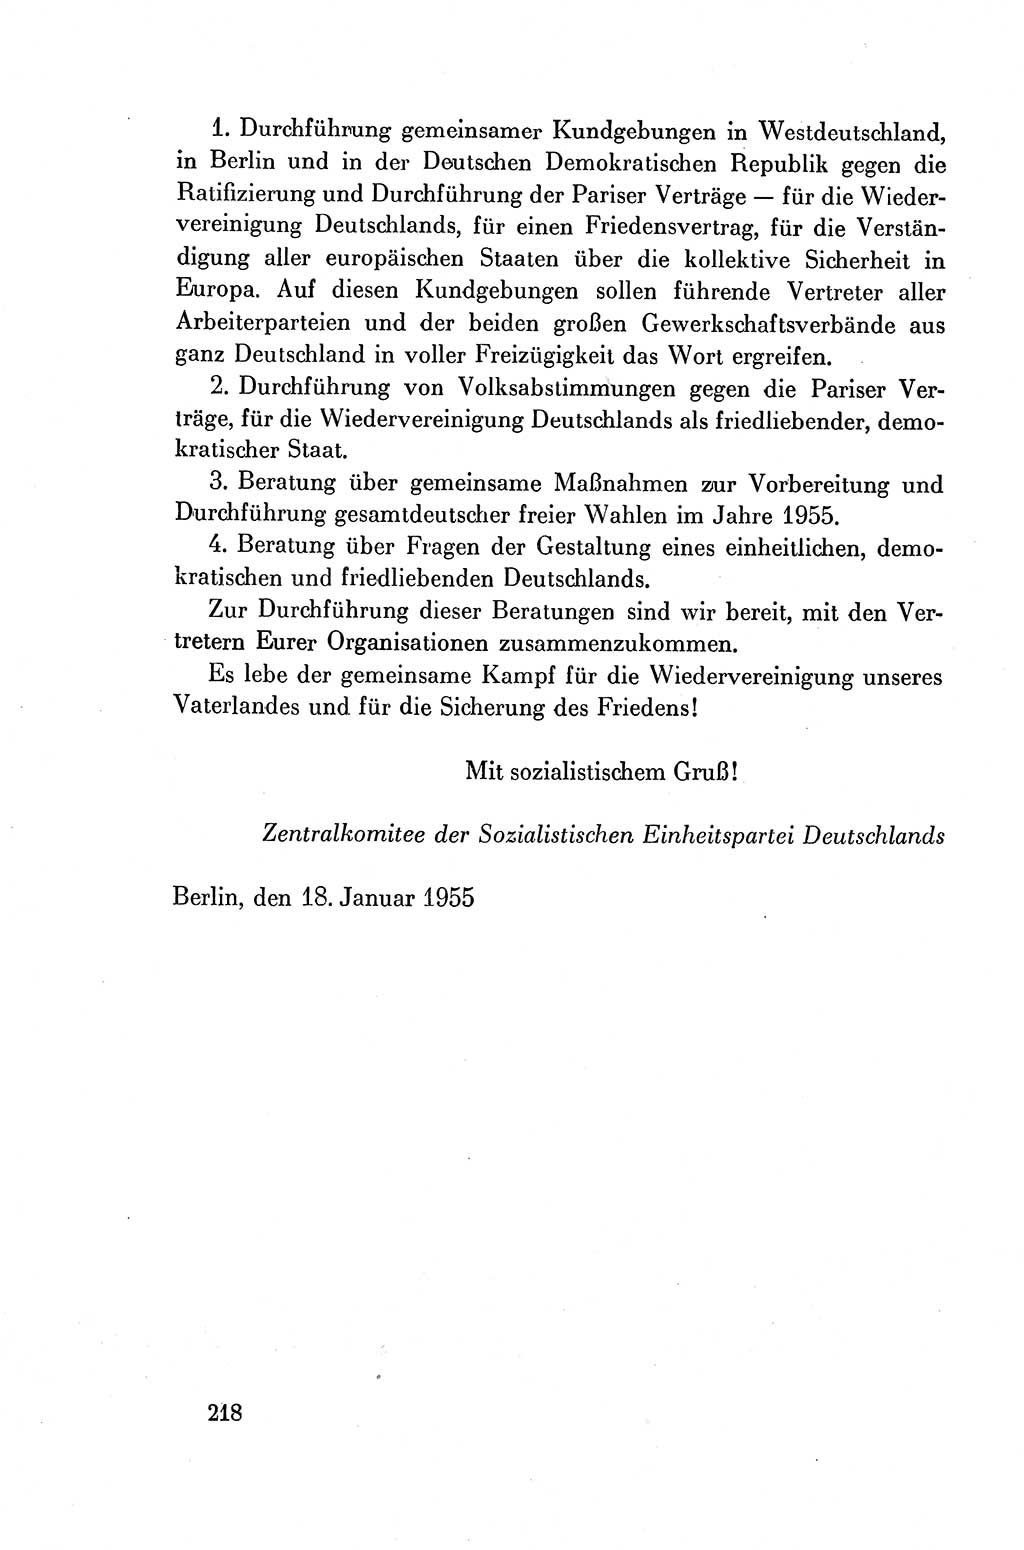 Dokumente der Sozialistischen Einheitspartei Deutschlands (SED) [Deutsche Demokratische Republik (DDR)] 1954-1955, Seite 218 (Dok. SED DDR 1954-1955, S. 218)